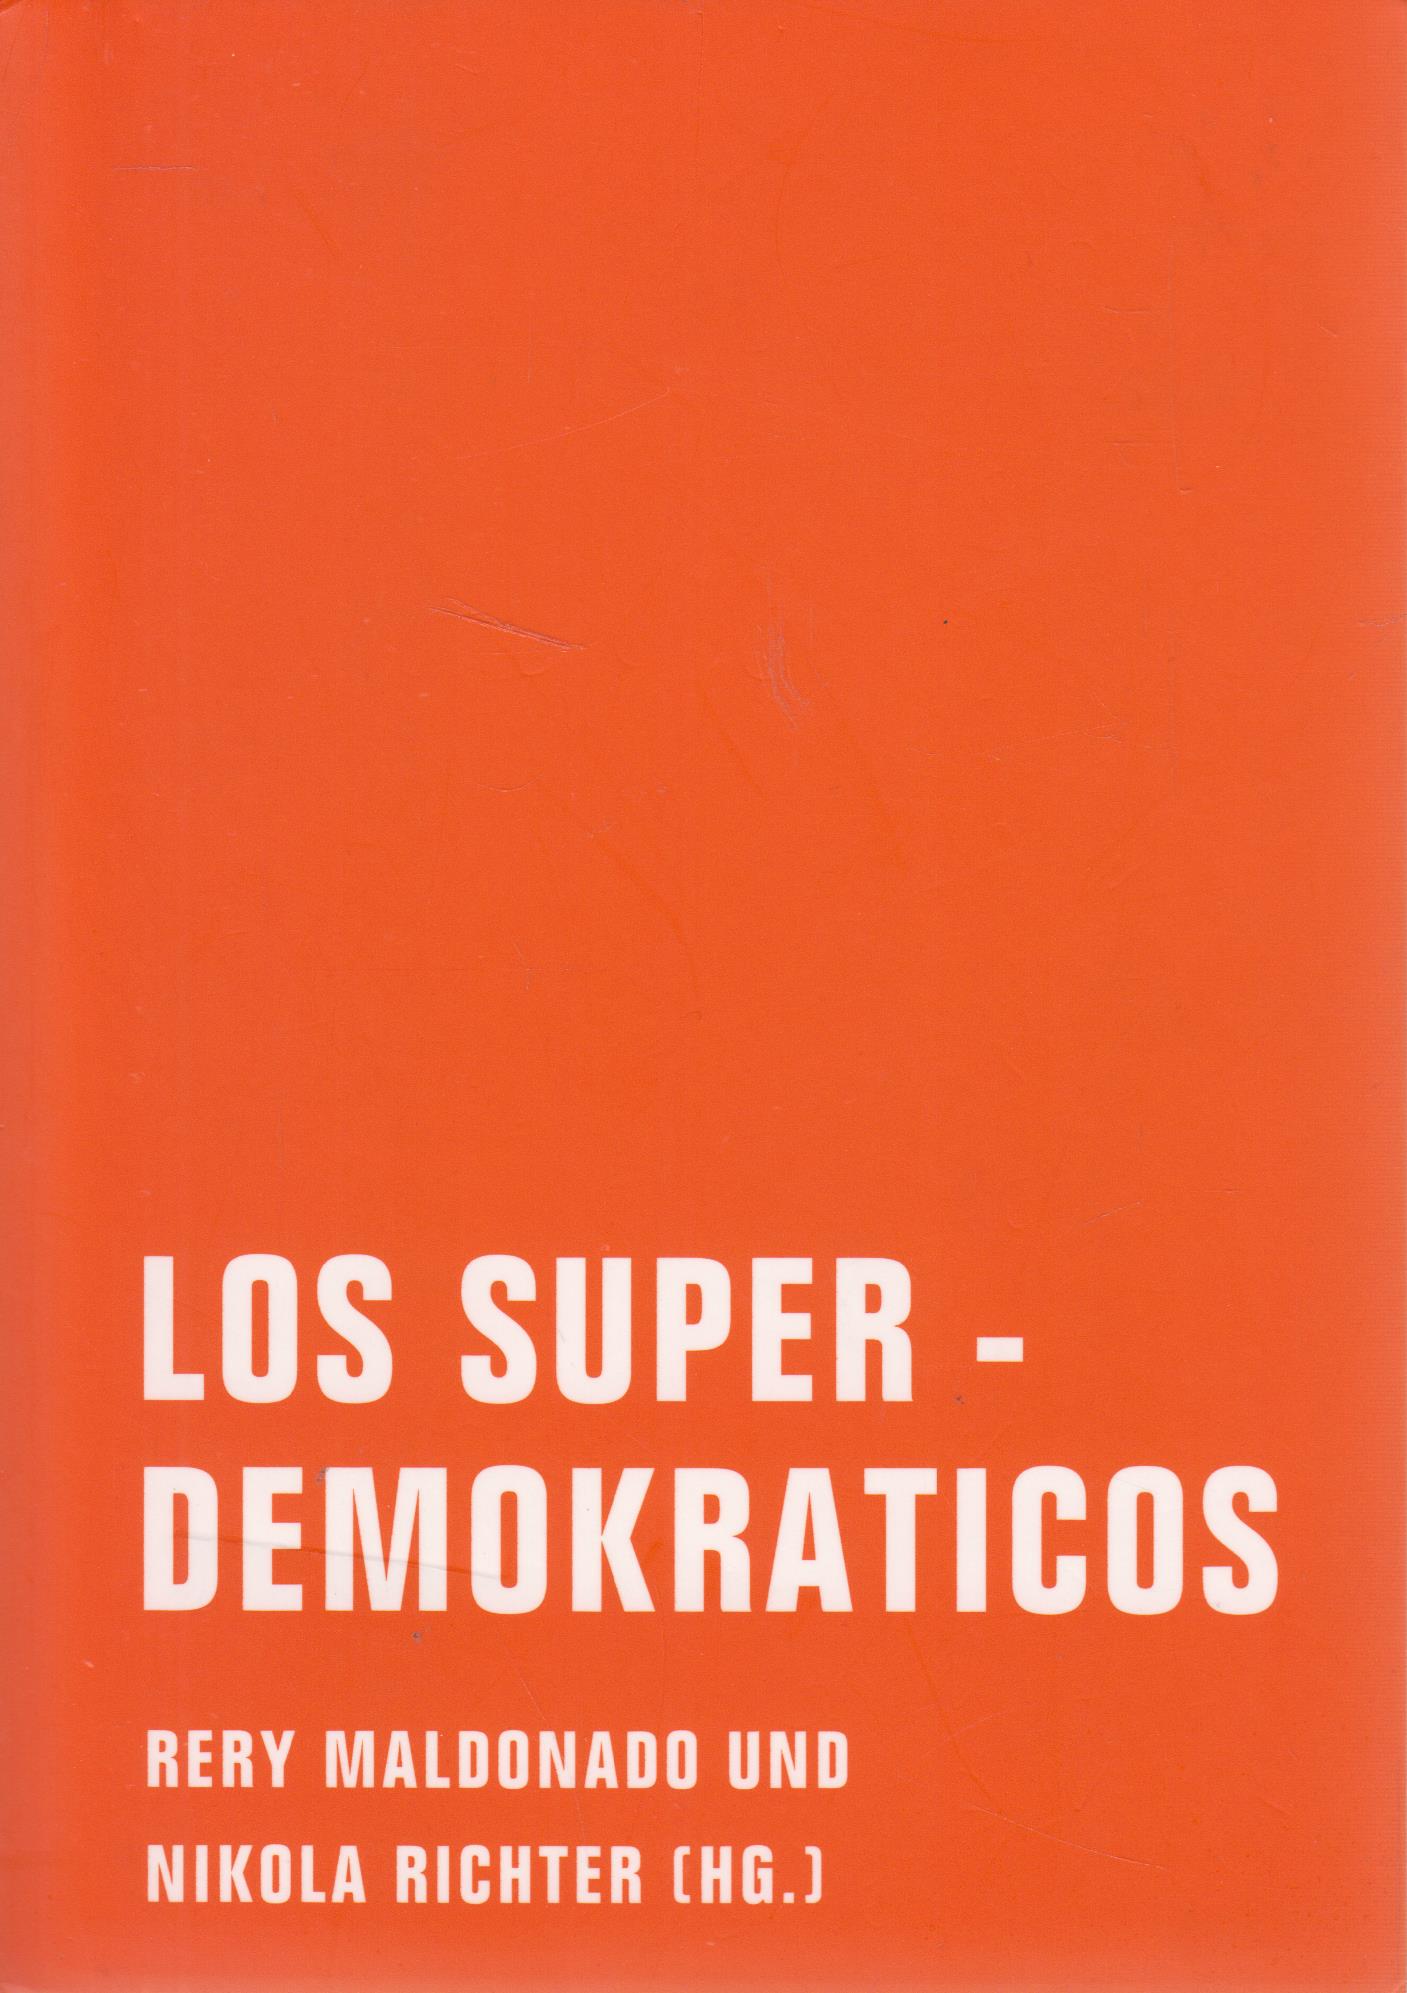 Los Superdemokraticos Eine literarische politische Theorie - Maldonado, Rery und Nikola Richter